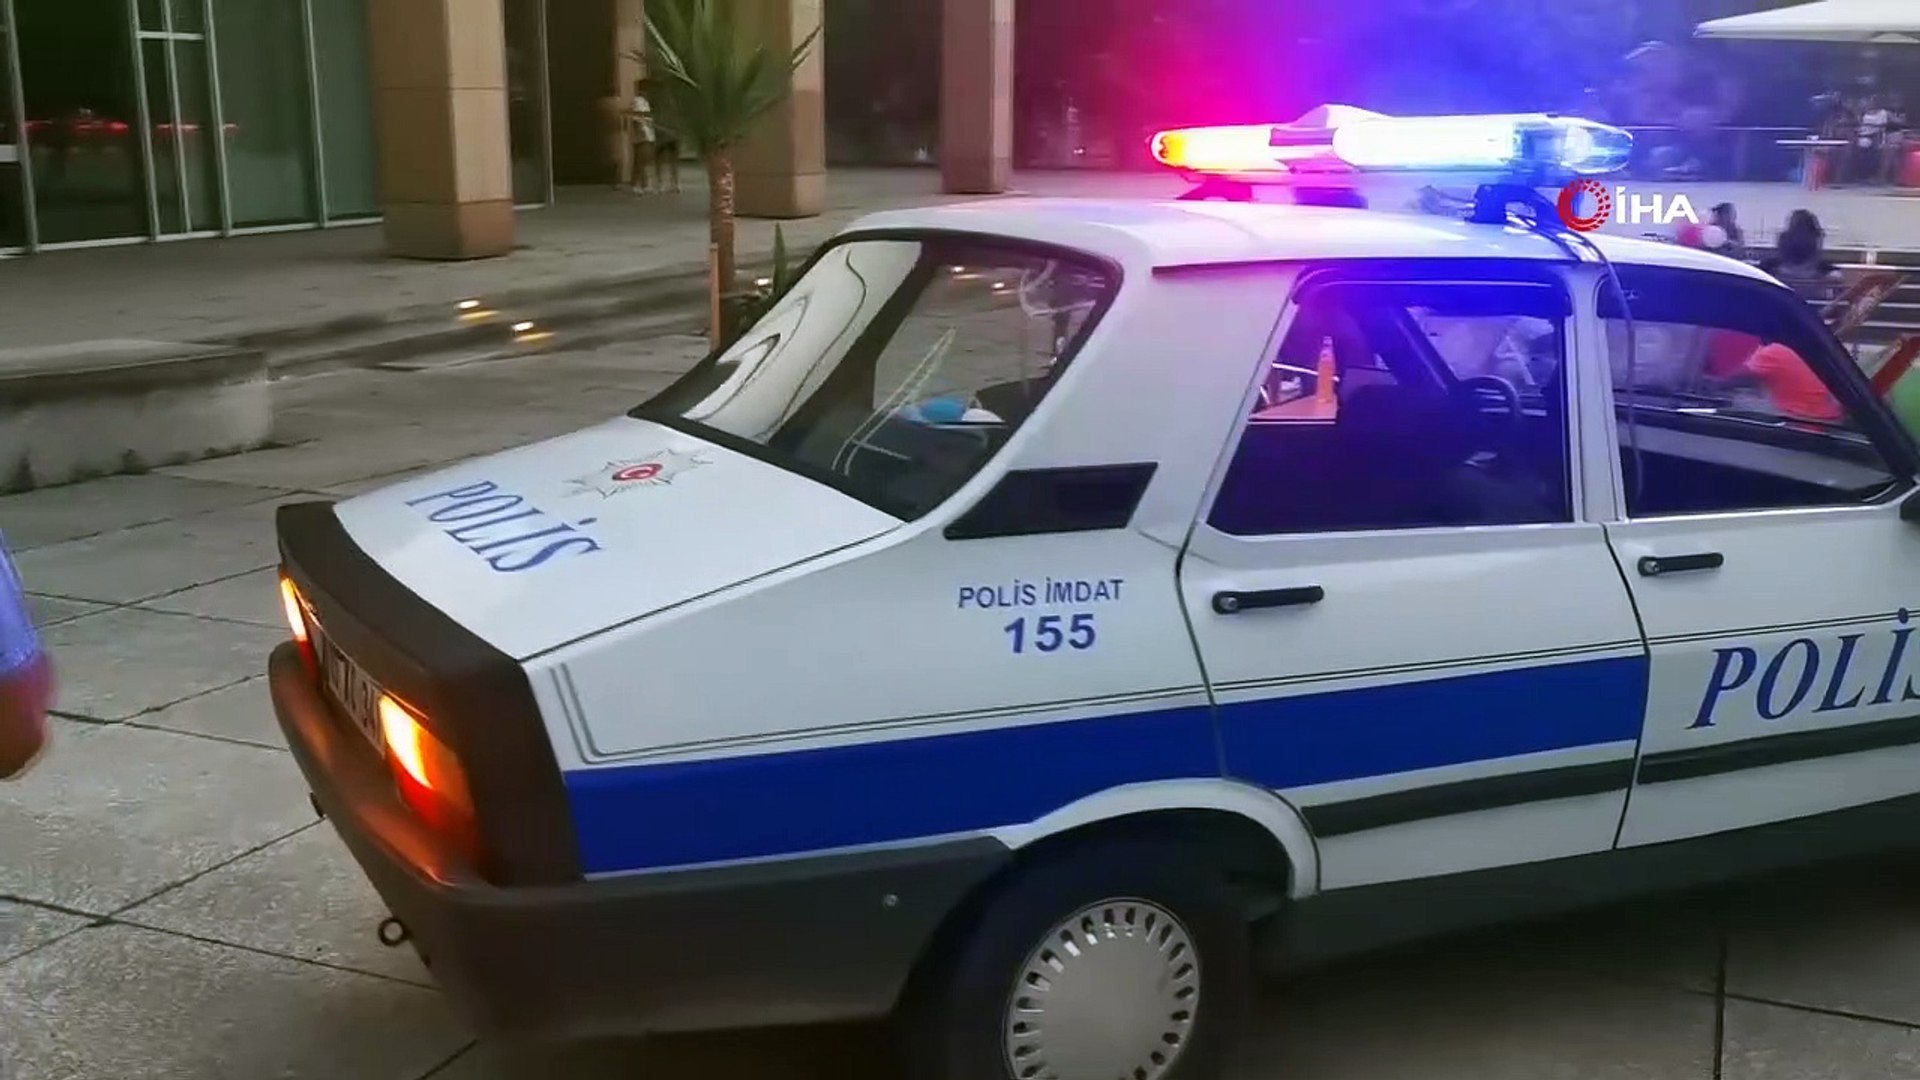 Anadol ve Toros'la gezdiği Almanya sokaklarında fenomen oldu- Klasik araç  tutkusunu Almanya'ya taşıyan gurbetçi görenleri şaşırtıyor- Türkiye'de  plakalı klasik polis aracı ile Almanya caddelerinin tozunu atıyor-  Almanya'daki festiva - Dailymotion Video